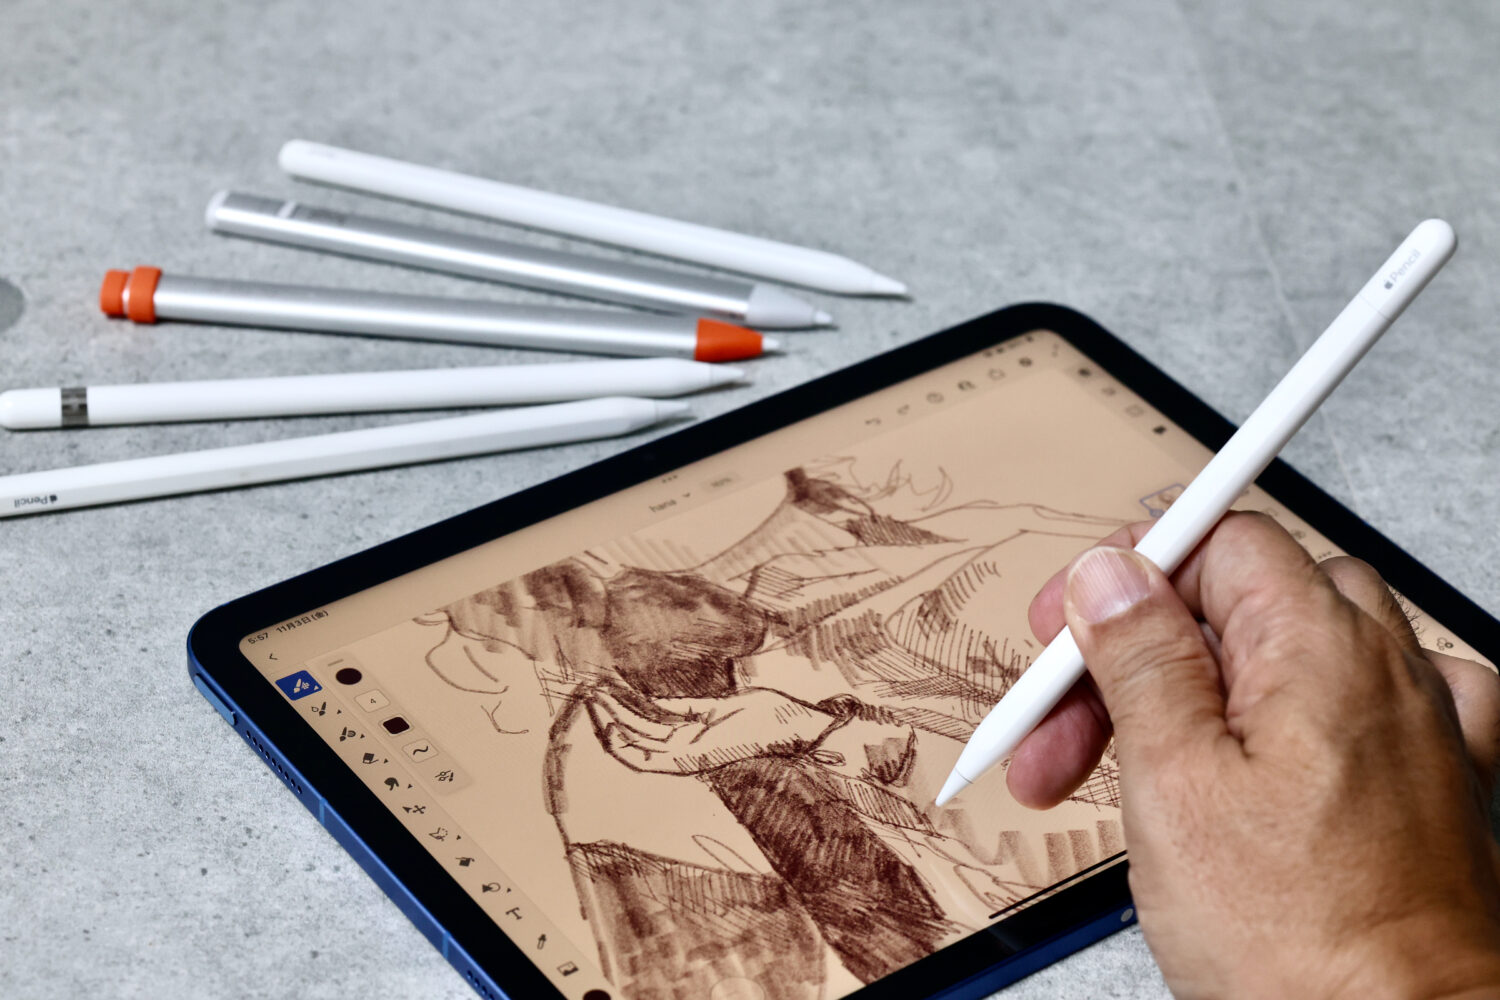 【美品】12.9 iPad Pro (M1) + Apple Pencilなど